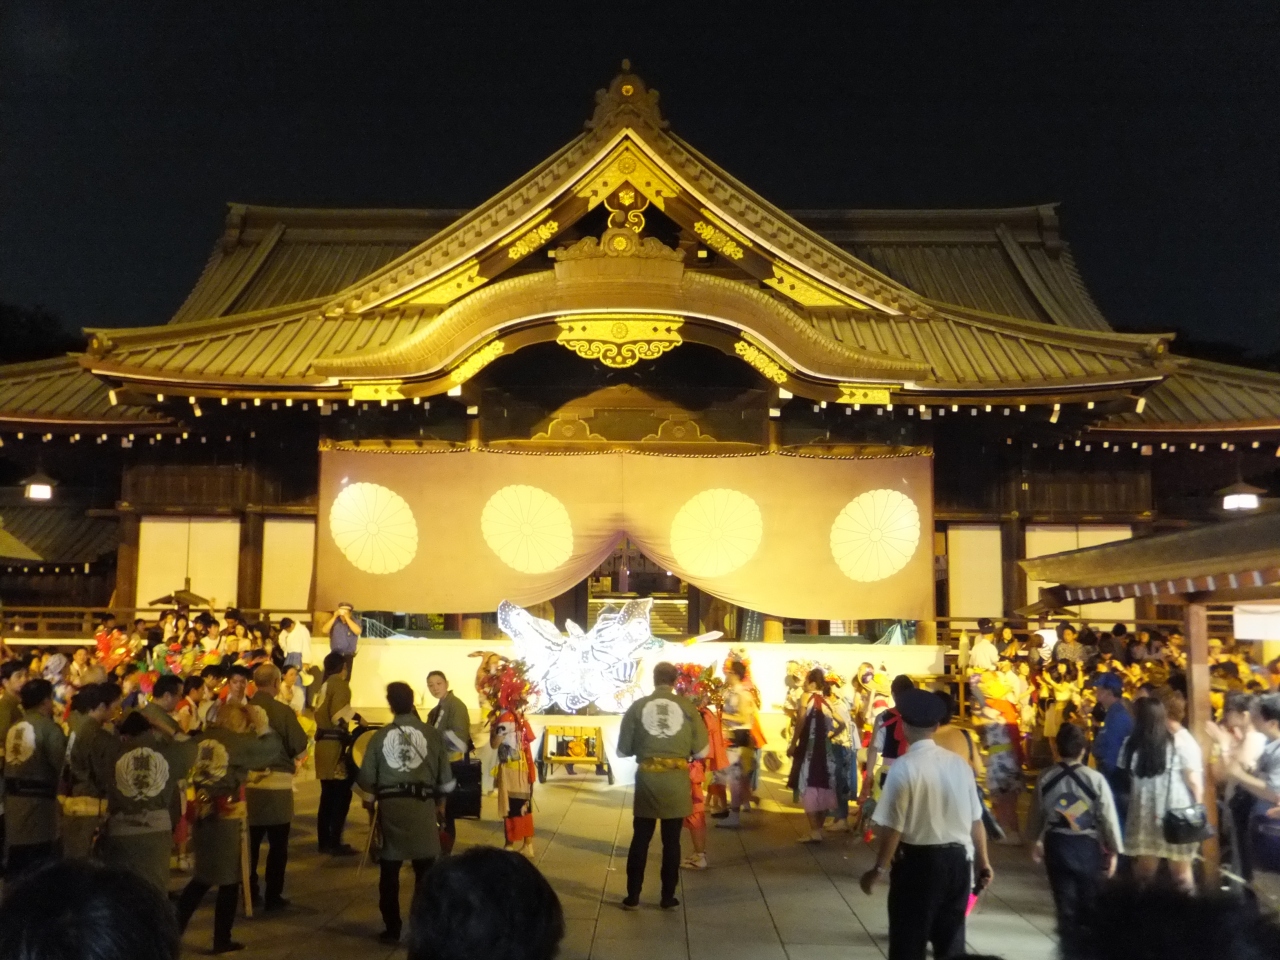 14 今年も靖国神社でみたま祭に行きました 神楽坂 飯田橋 東京 の旅行記 ブログ By Dorompaさん フォートラベル